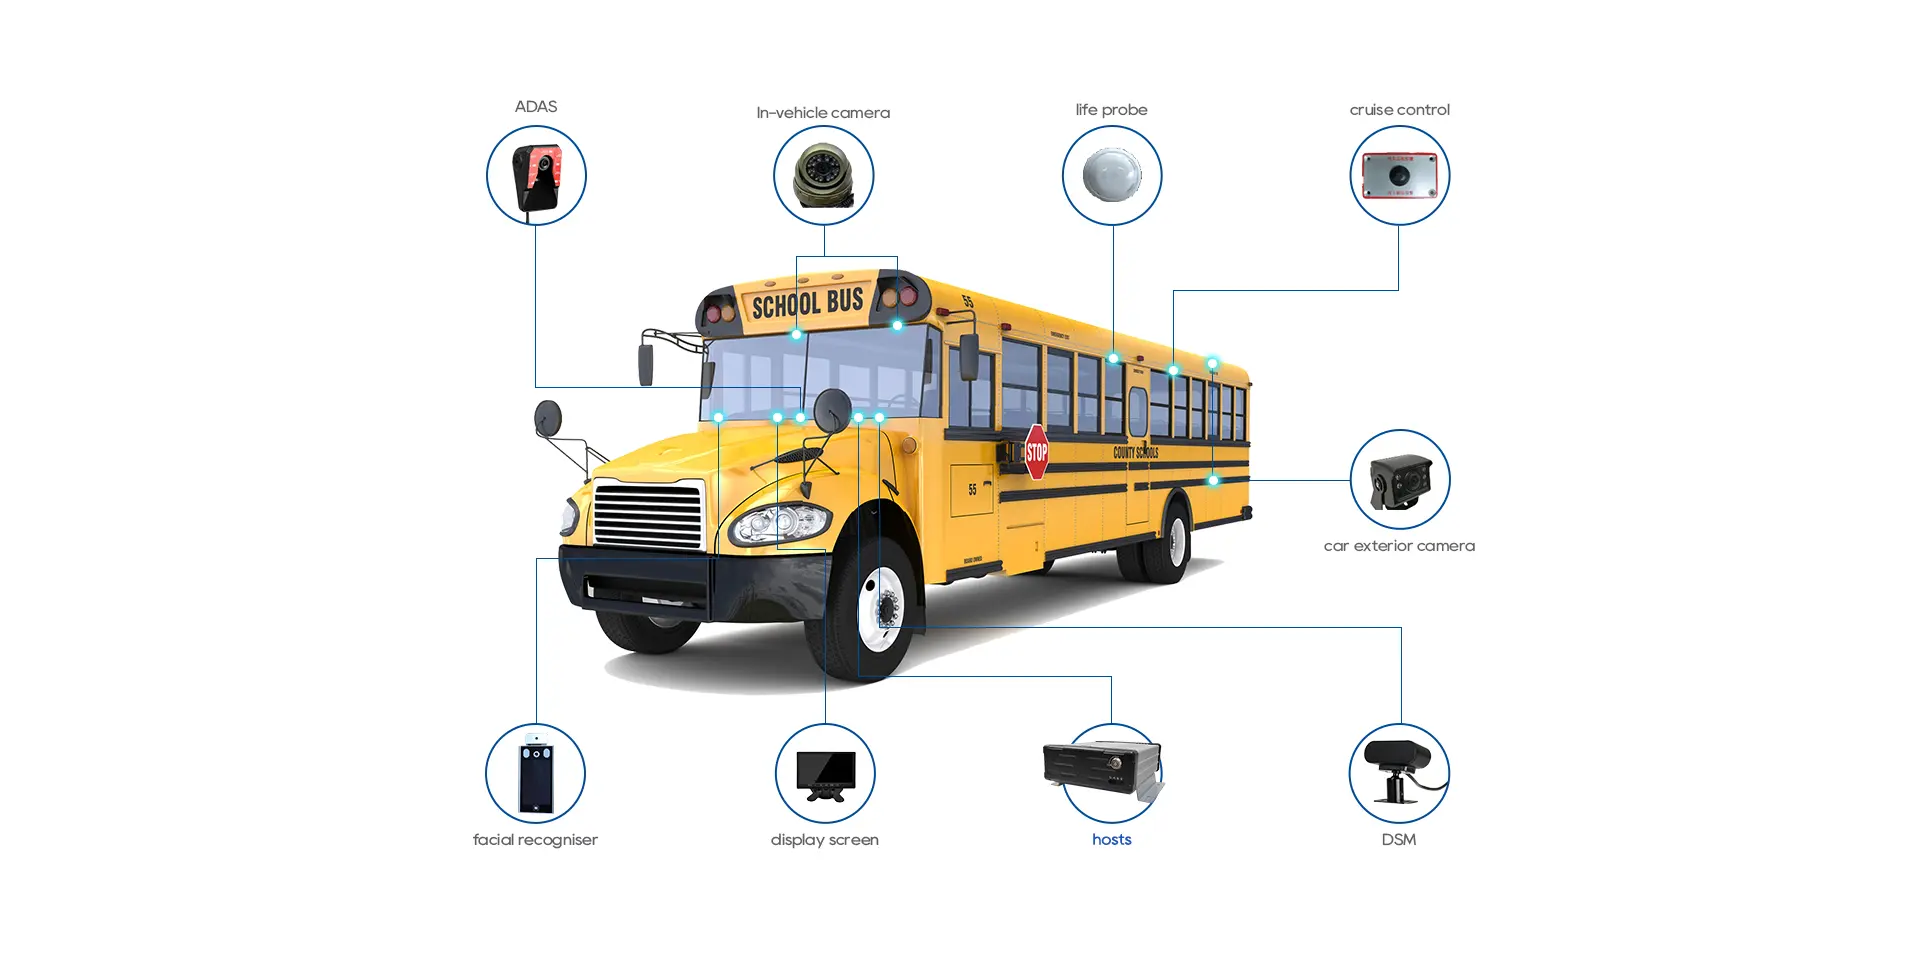 School Bus Surveillance Camera Systems